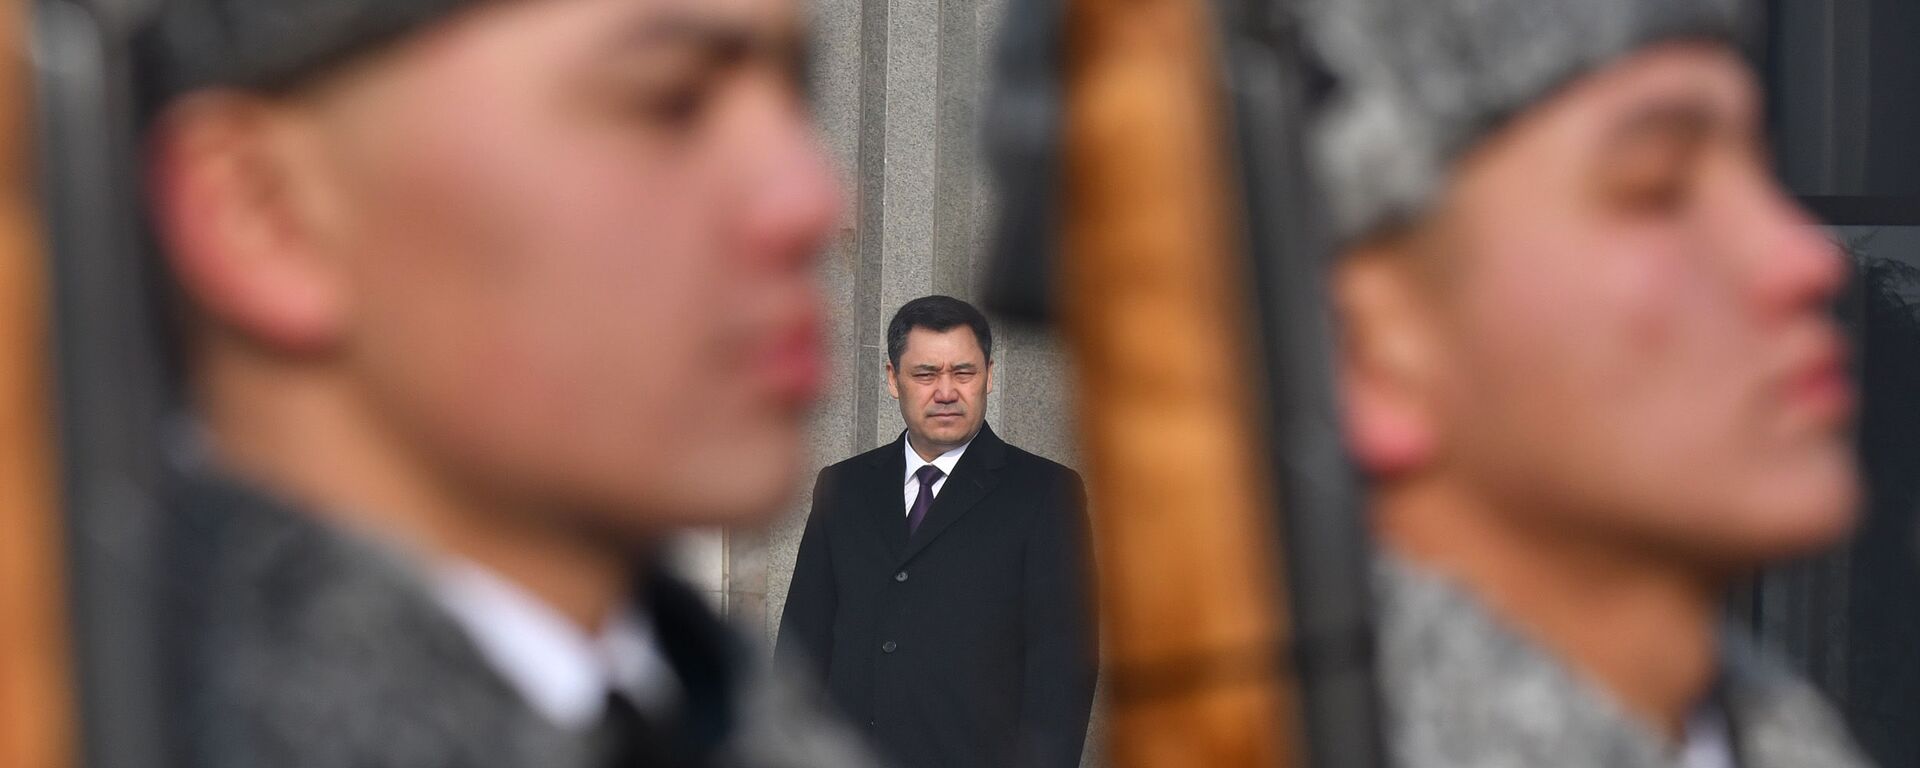 Президент Кыргызстана Садыр Жапаров. Архивное фото - Sputnik Кыргызстан, 1920, 19.02.2021